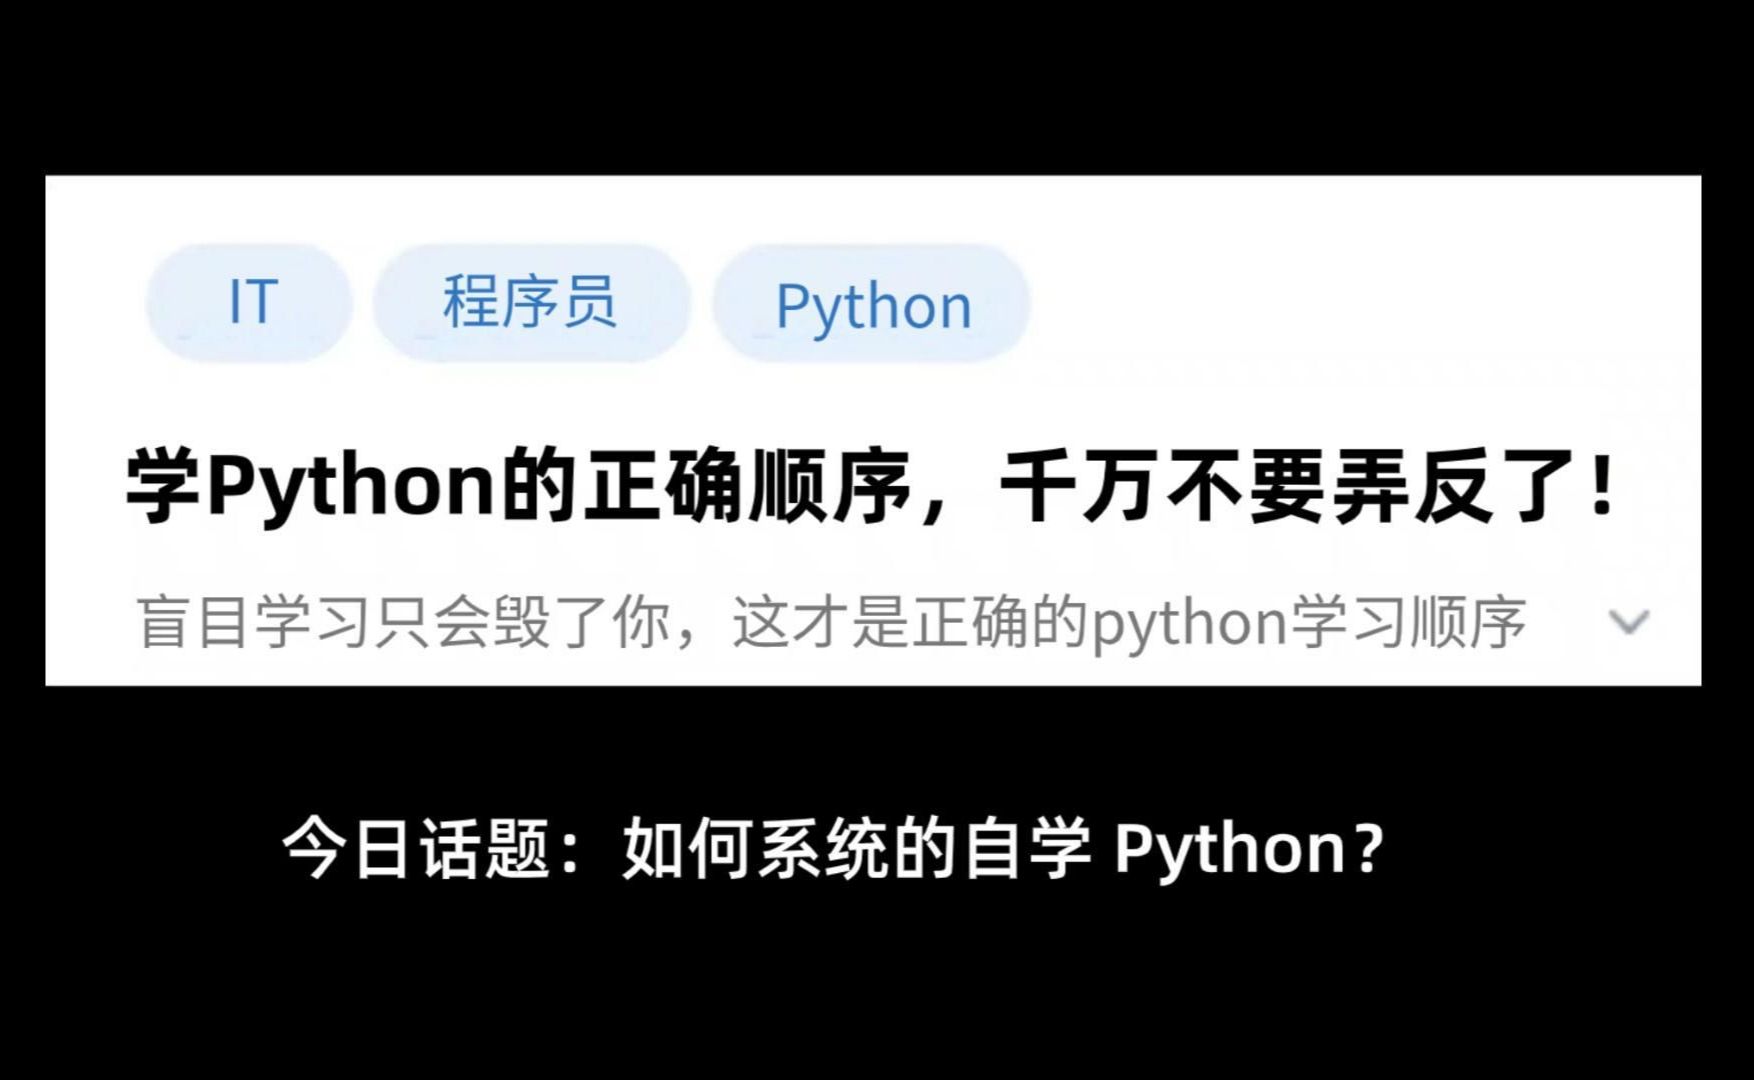 今日话题 : 如何系统的自学 Python?！学习顺序真的非常重要